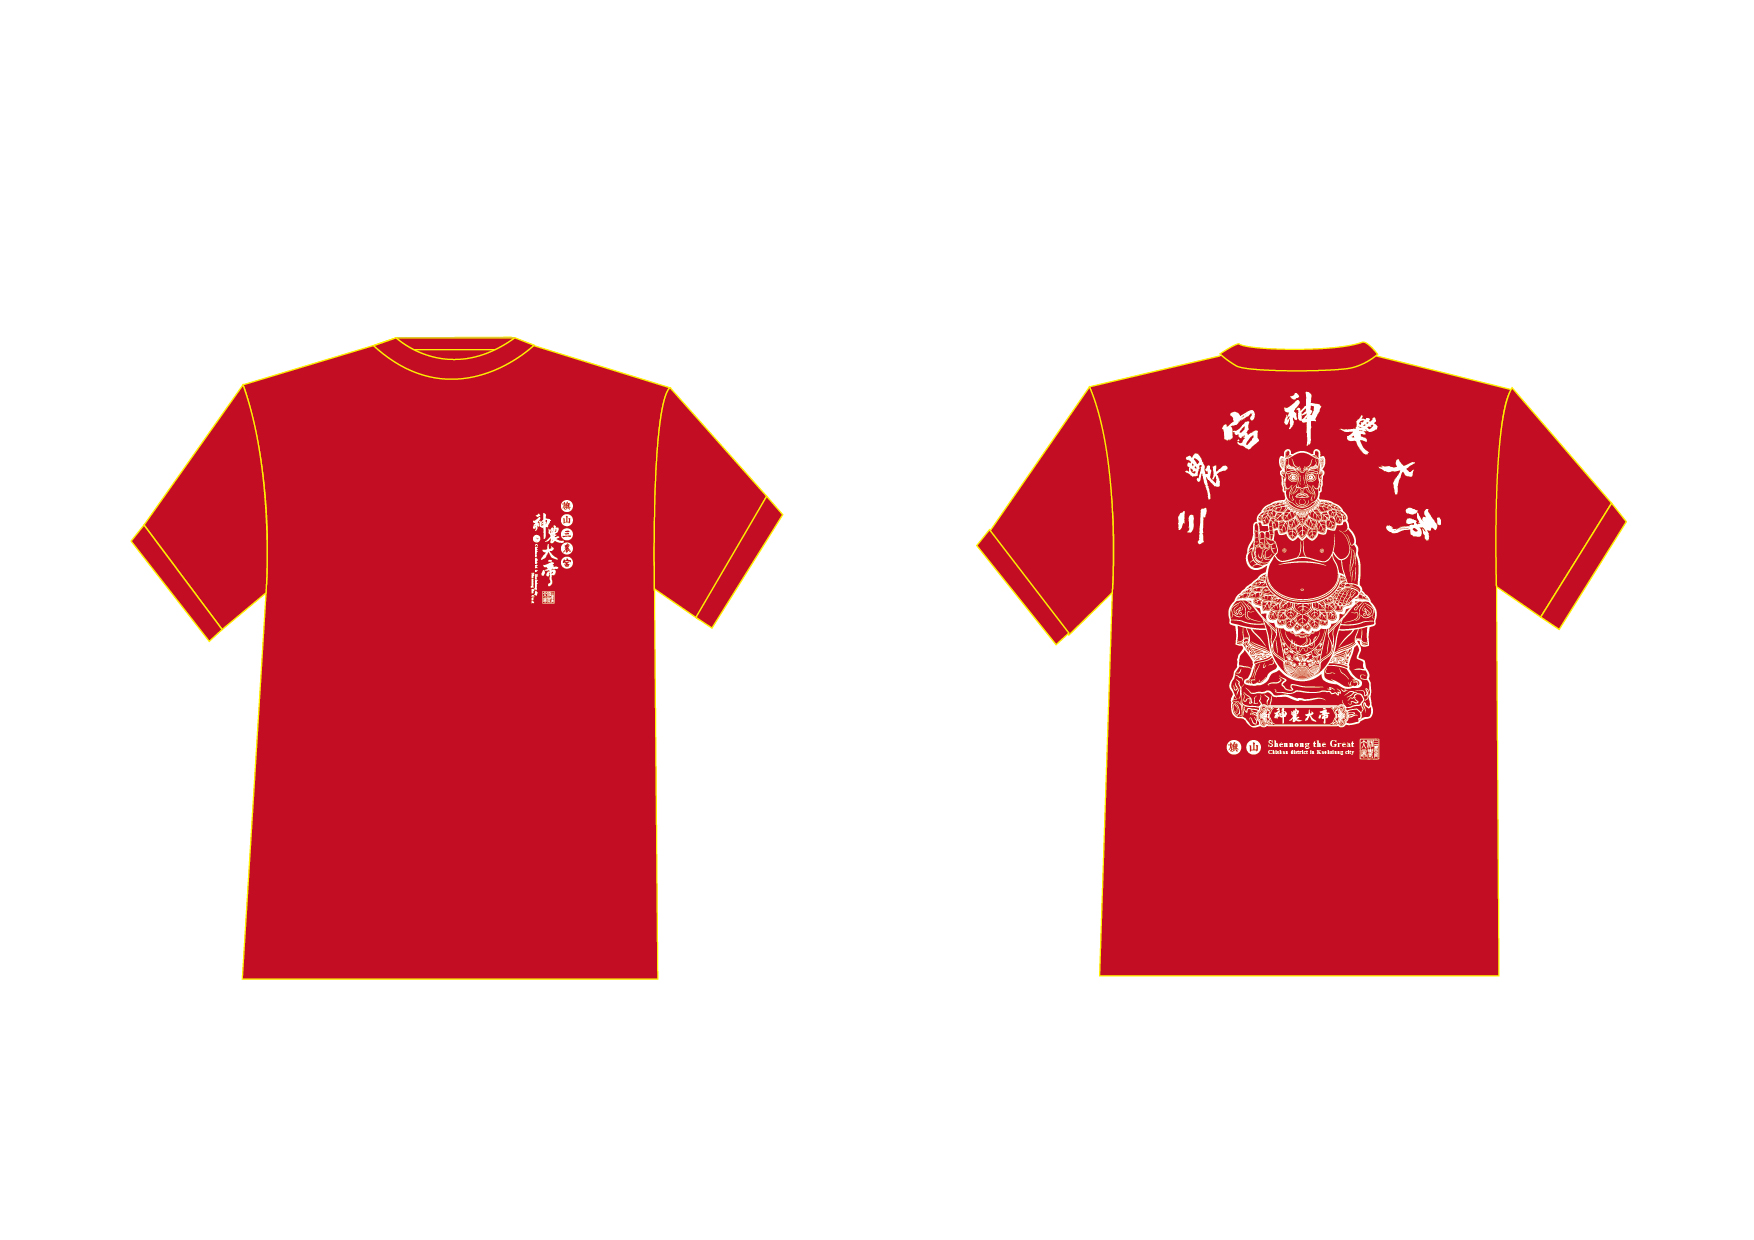 T恤改版-紅 (參考圖片).jpg